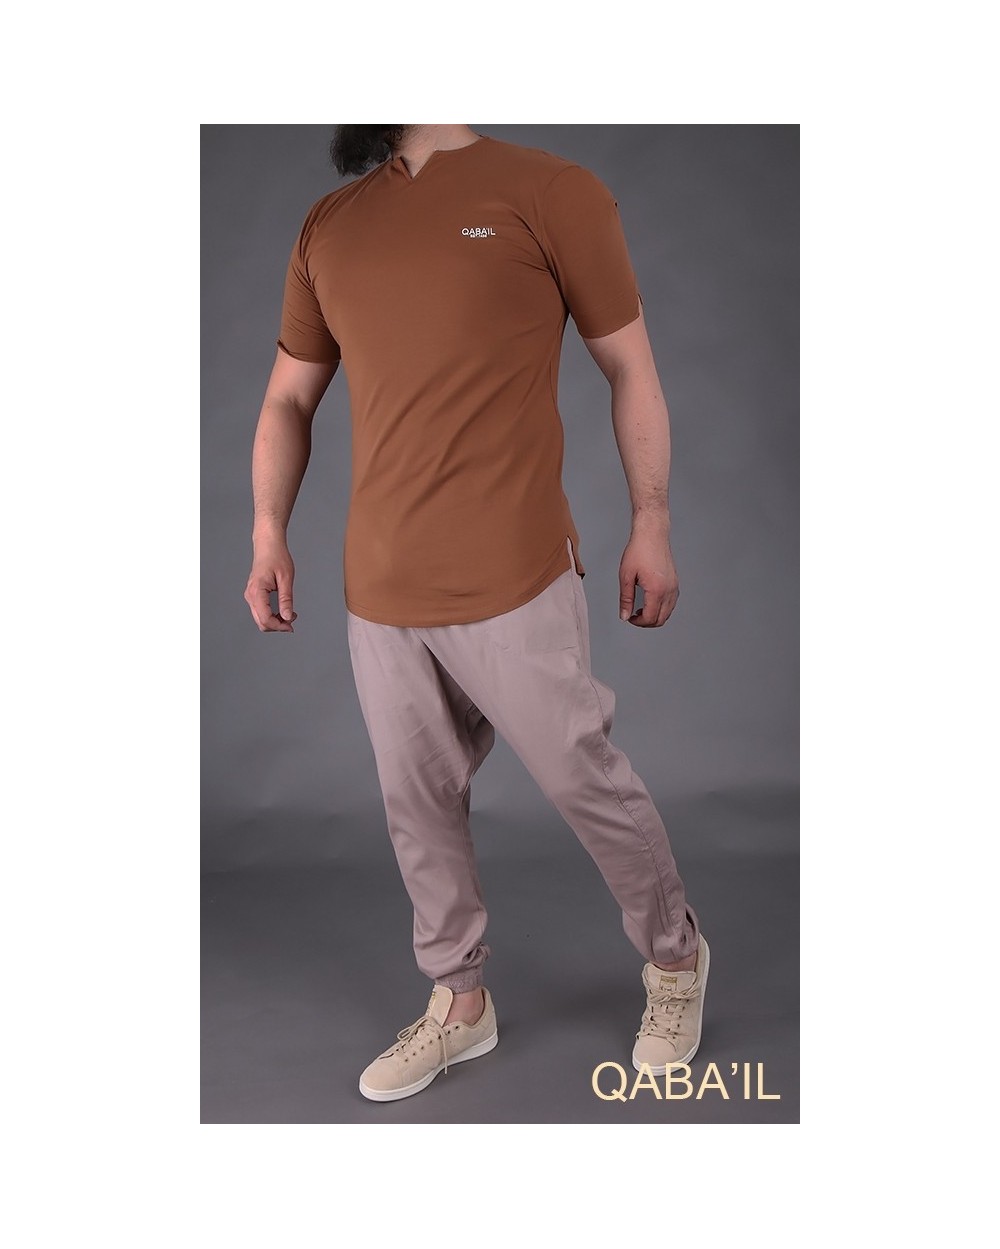 Qabail Level Tshirt